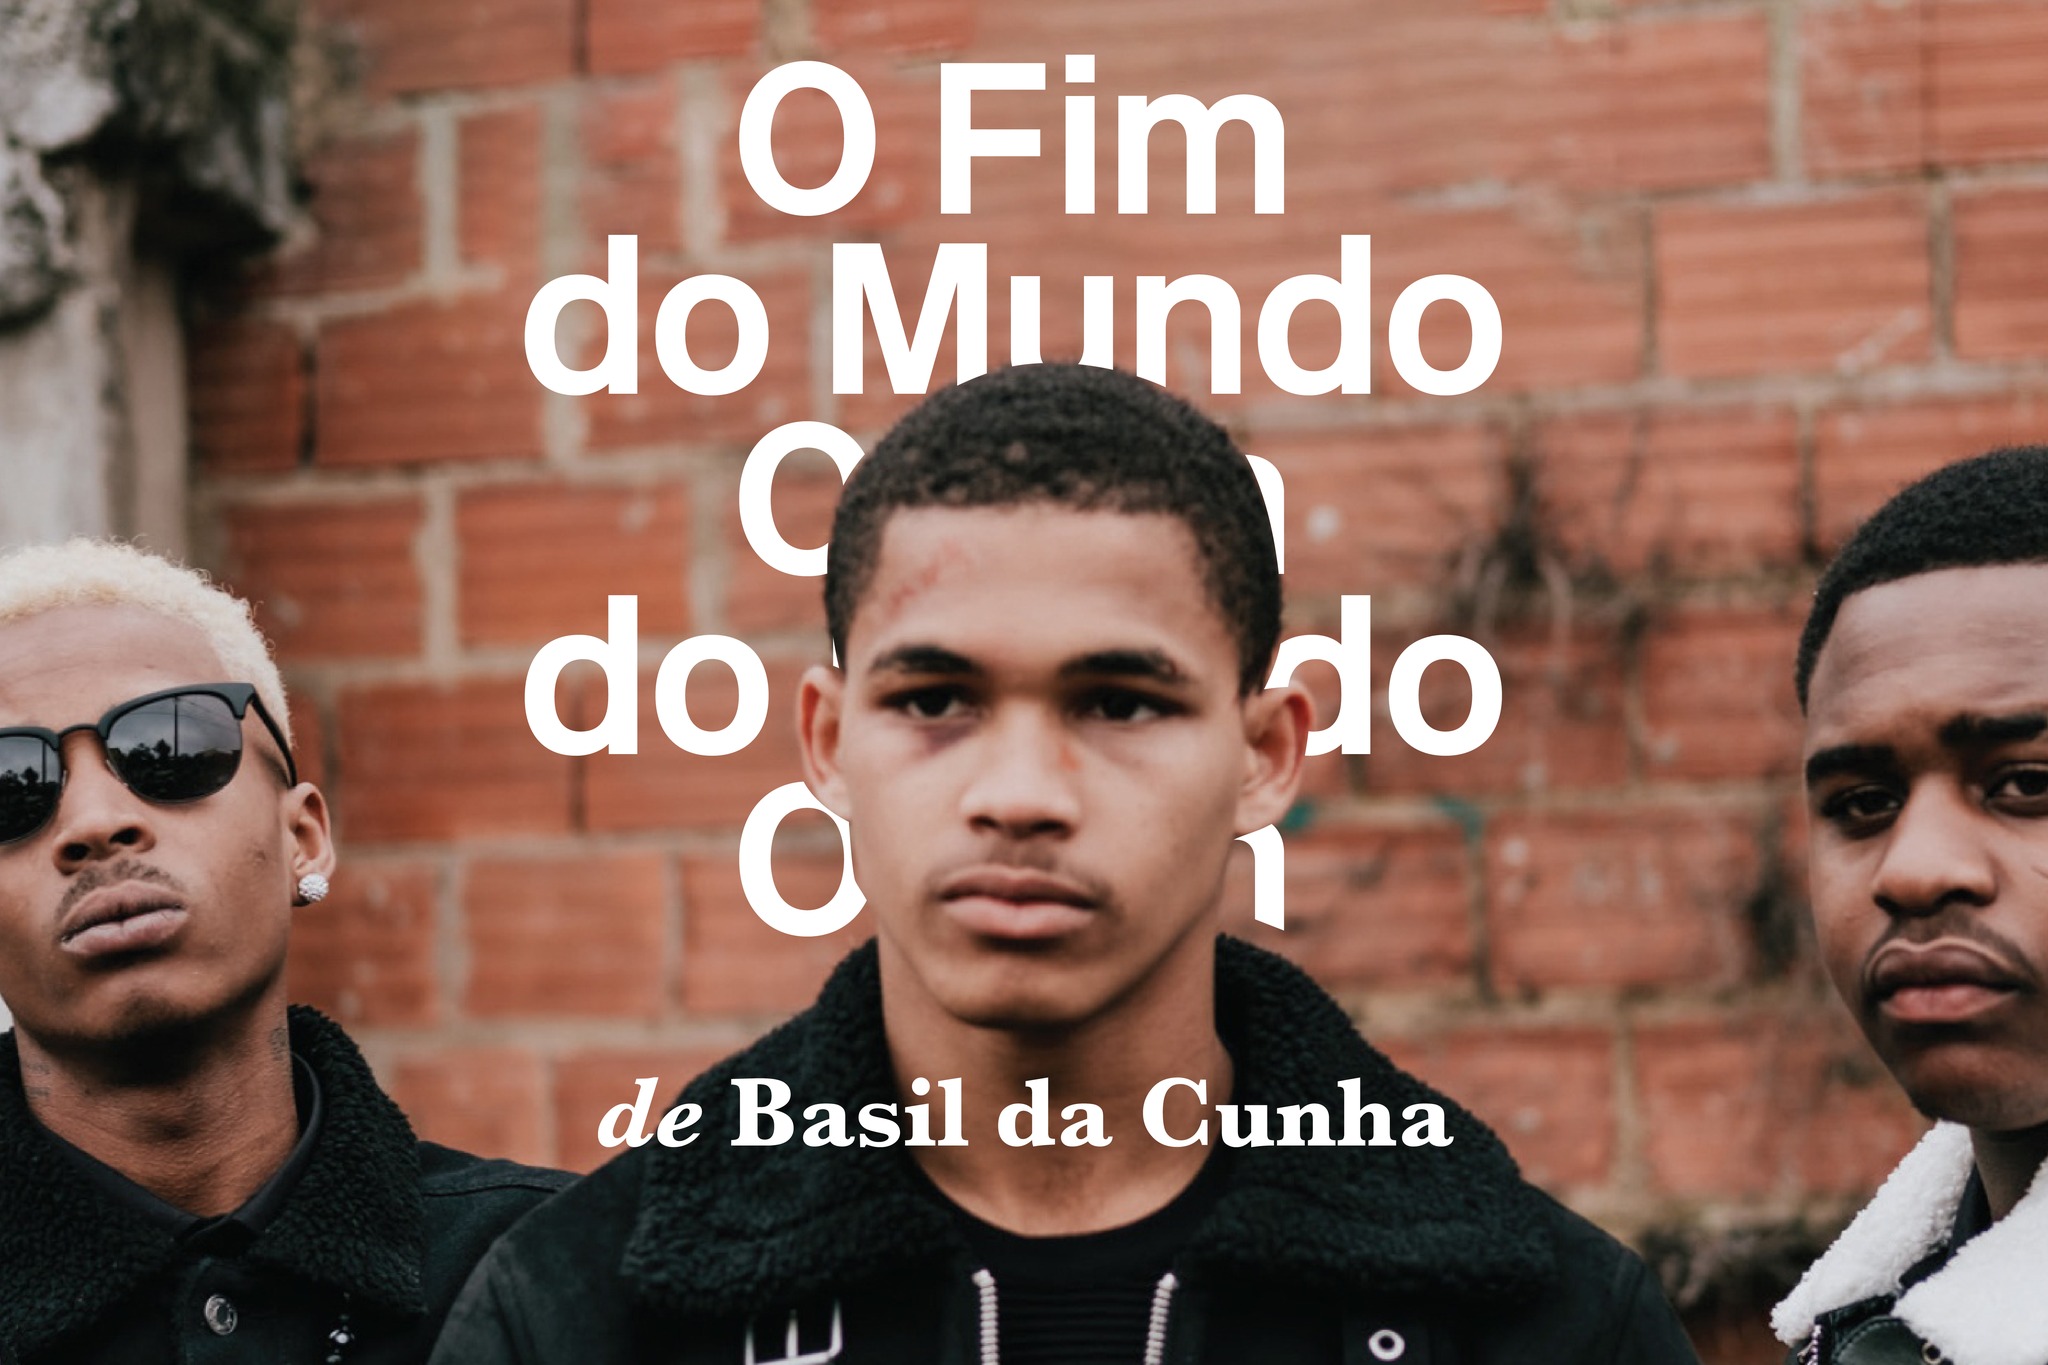 O Fim do Mundo de Basil da Cunha